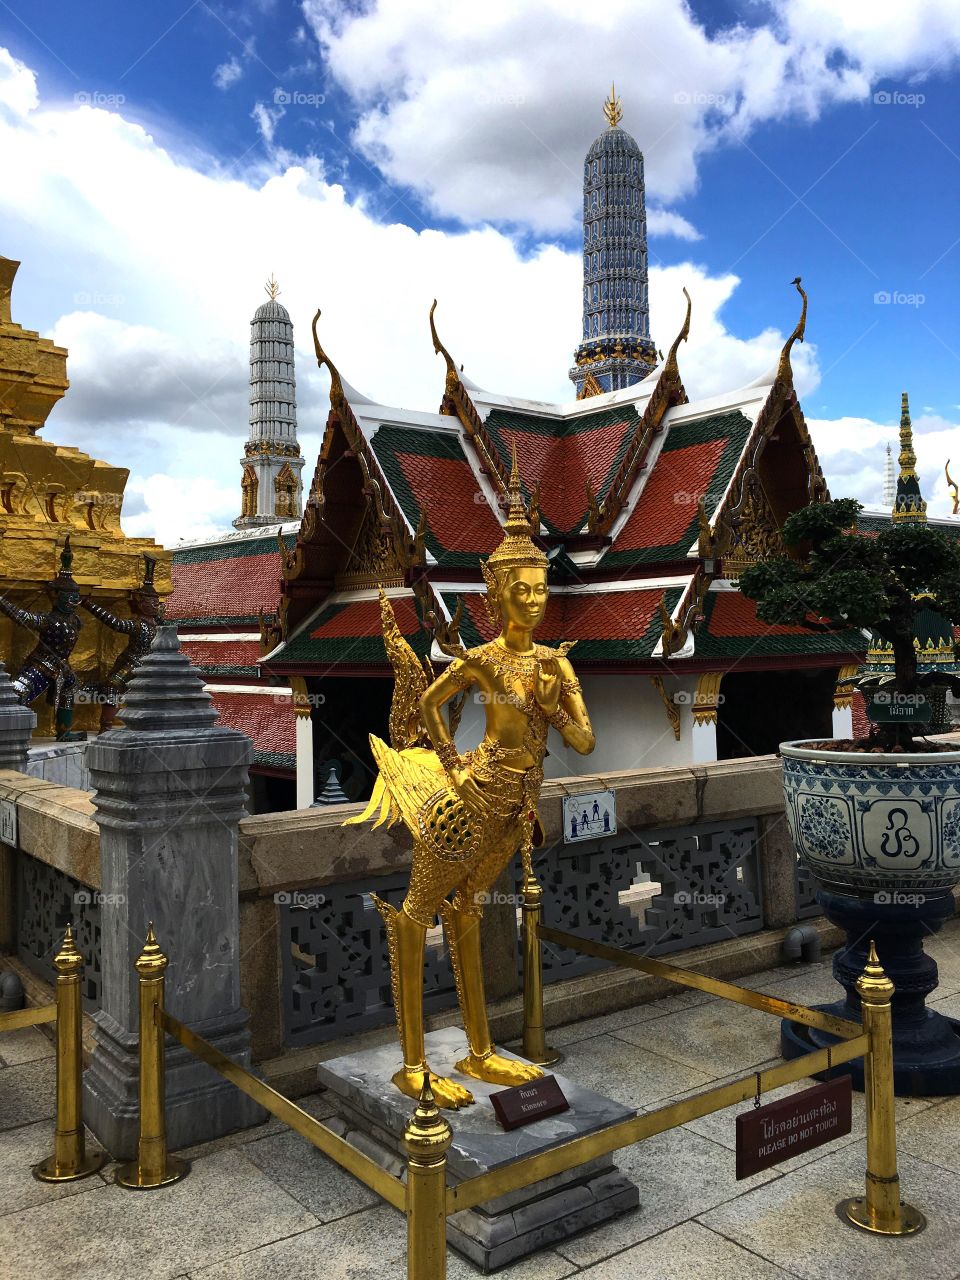 Grand Palace / Bangkok Thailand 47